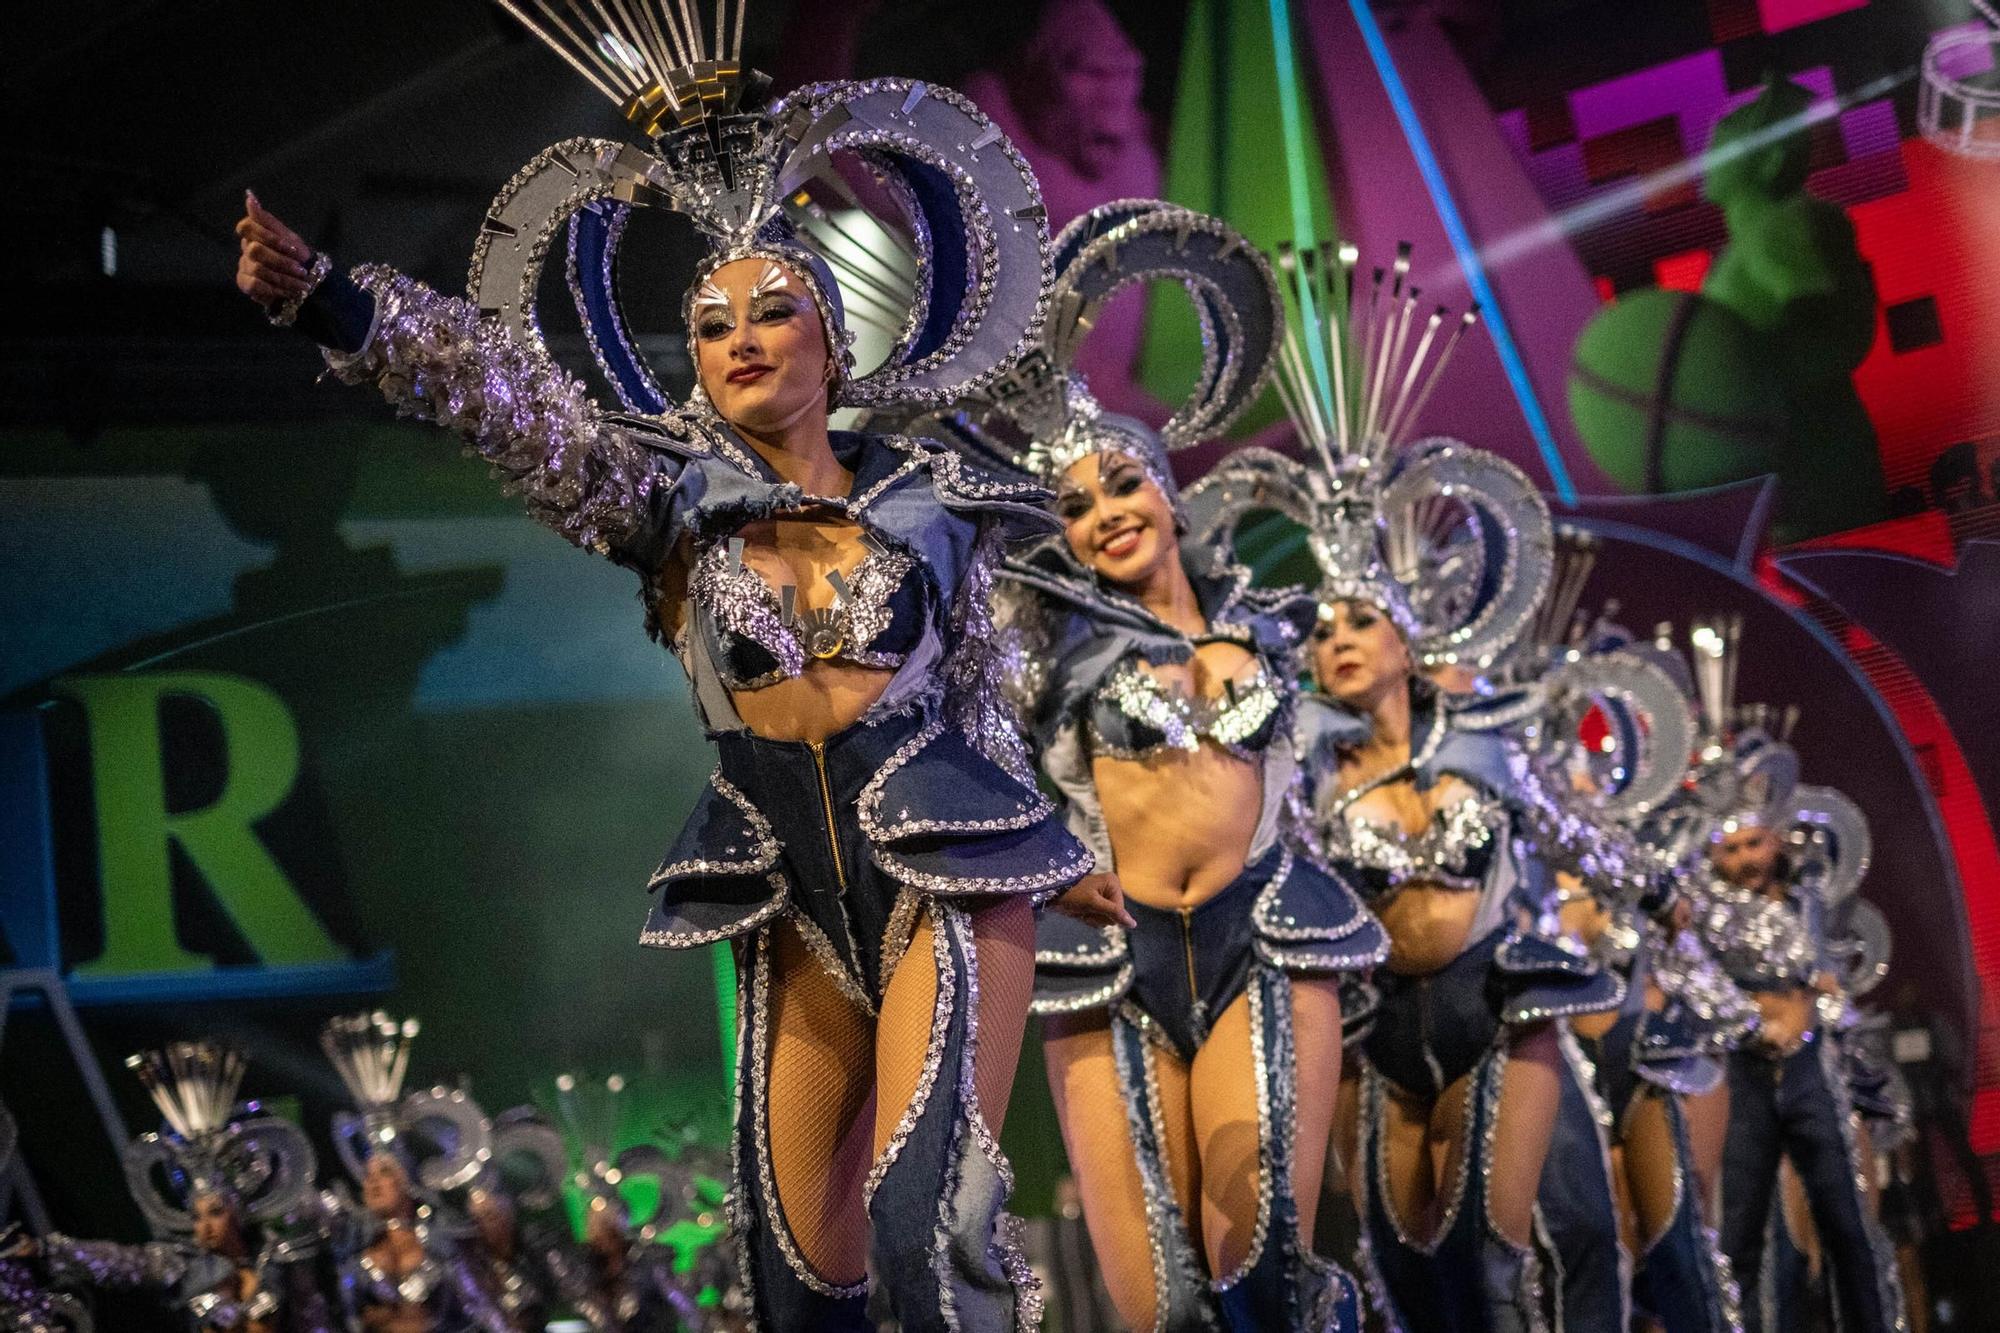 Concurso de Comparsas del Carnaval de Santa Cruz de Tenerife